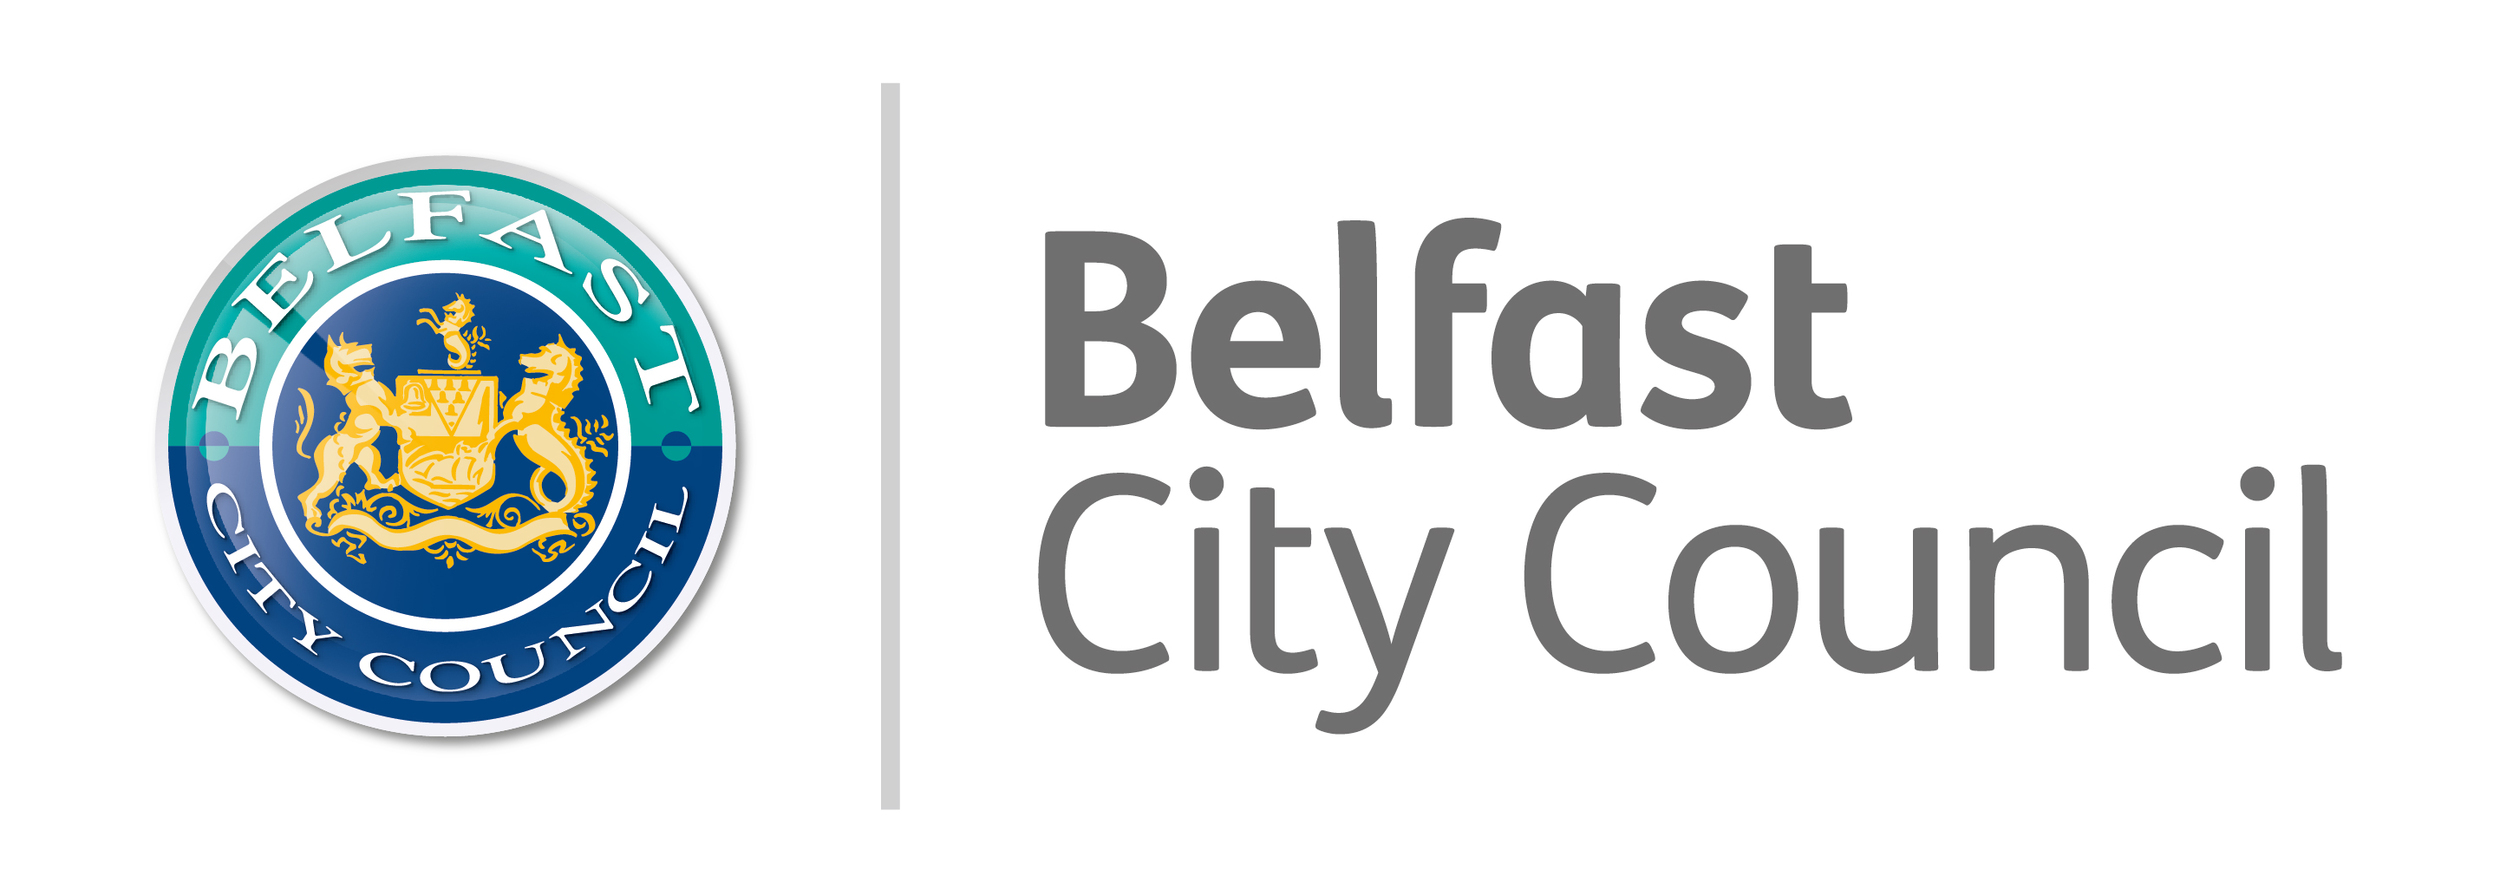 Belfast City Council 2015 (Master).jpg